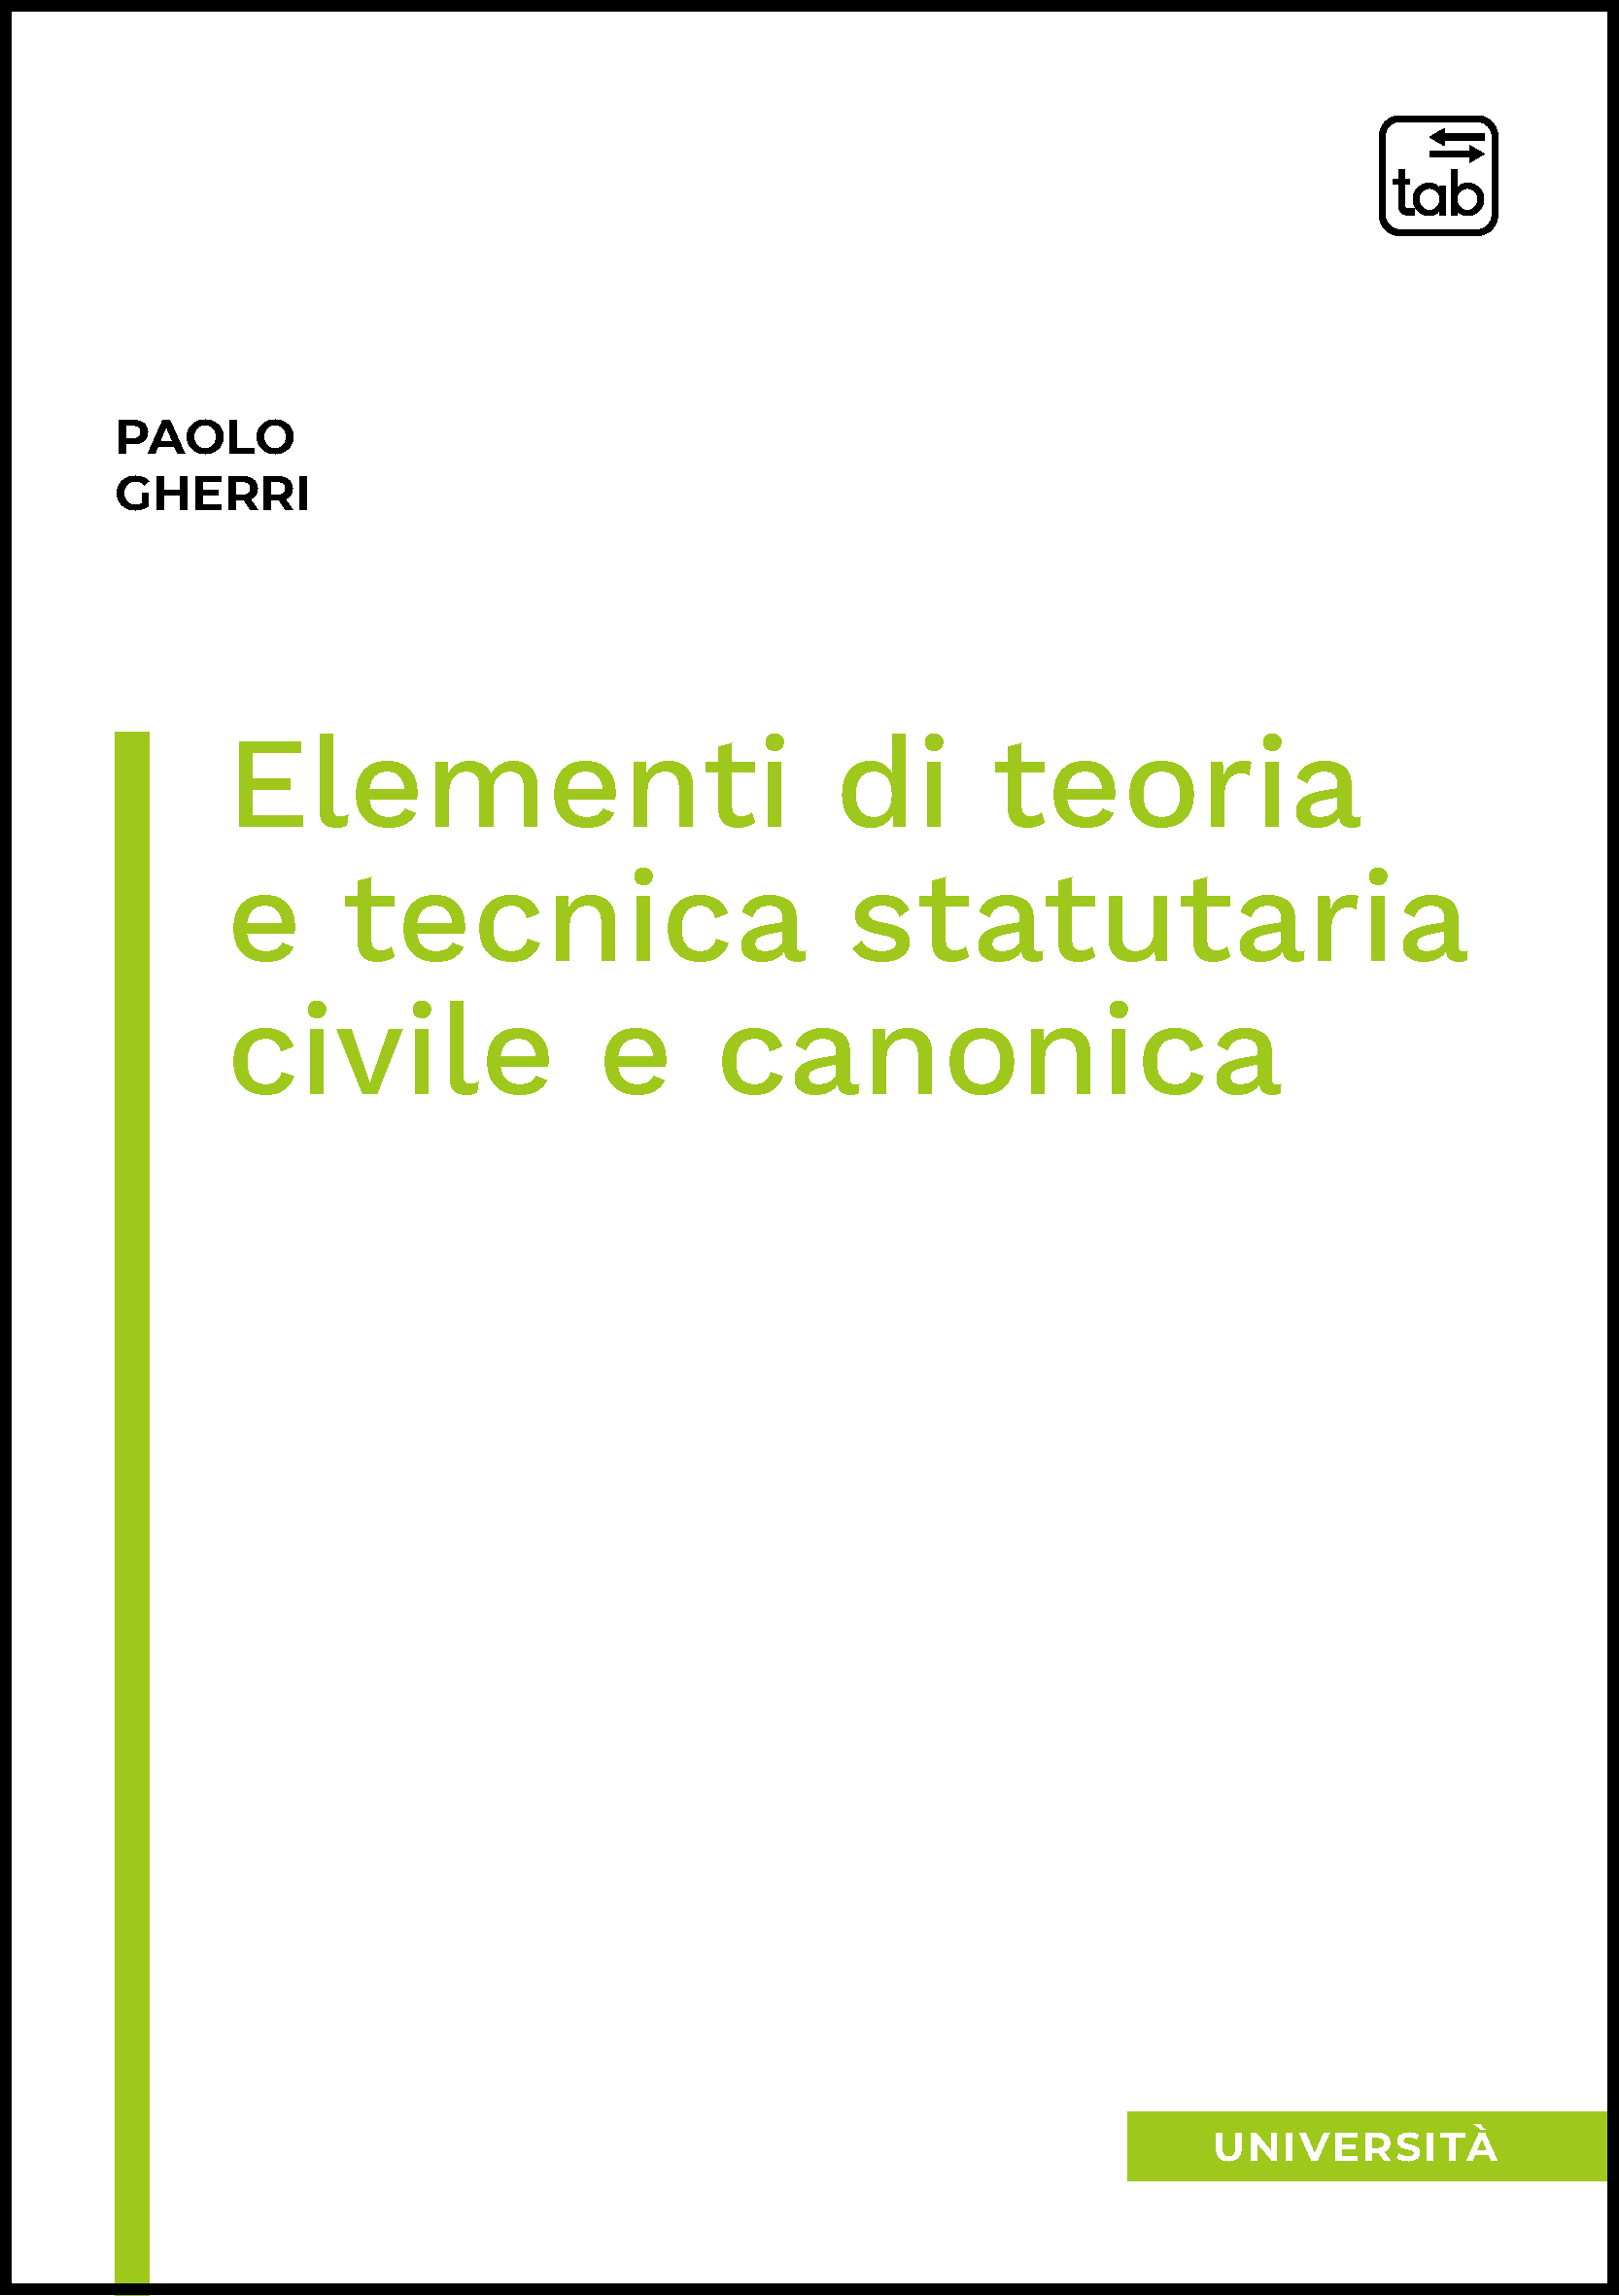 Elementi di teoria e tecnica statutaria civile e canonica